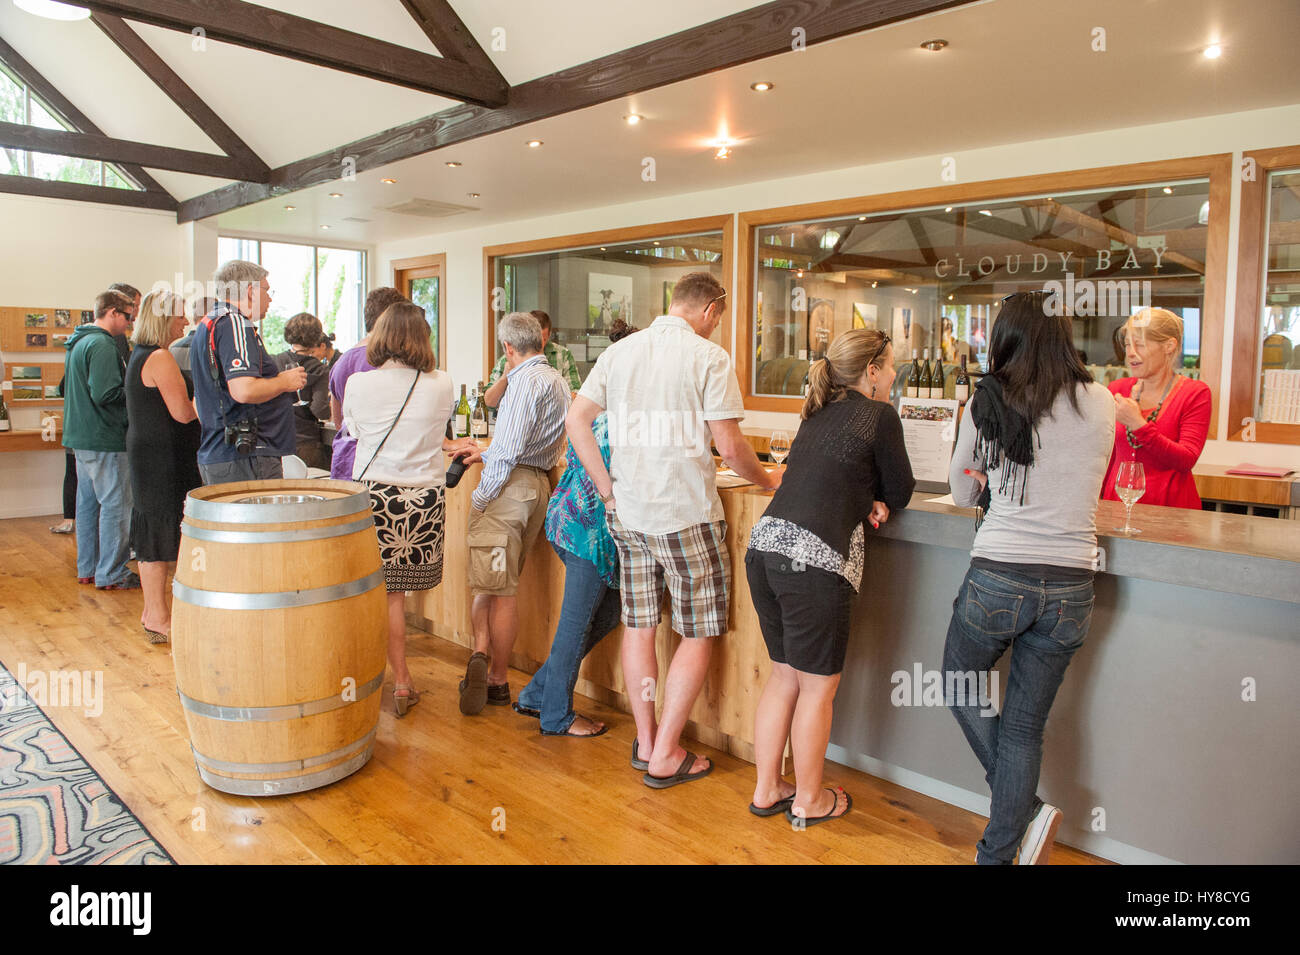 Dégustation de vin dans la région de Blenheim. Cette région de Marlborough a commencé l'industrie vinicole moderne en Nouvelle-Zélande. Banque D'Images